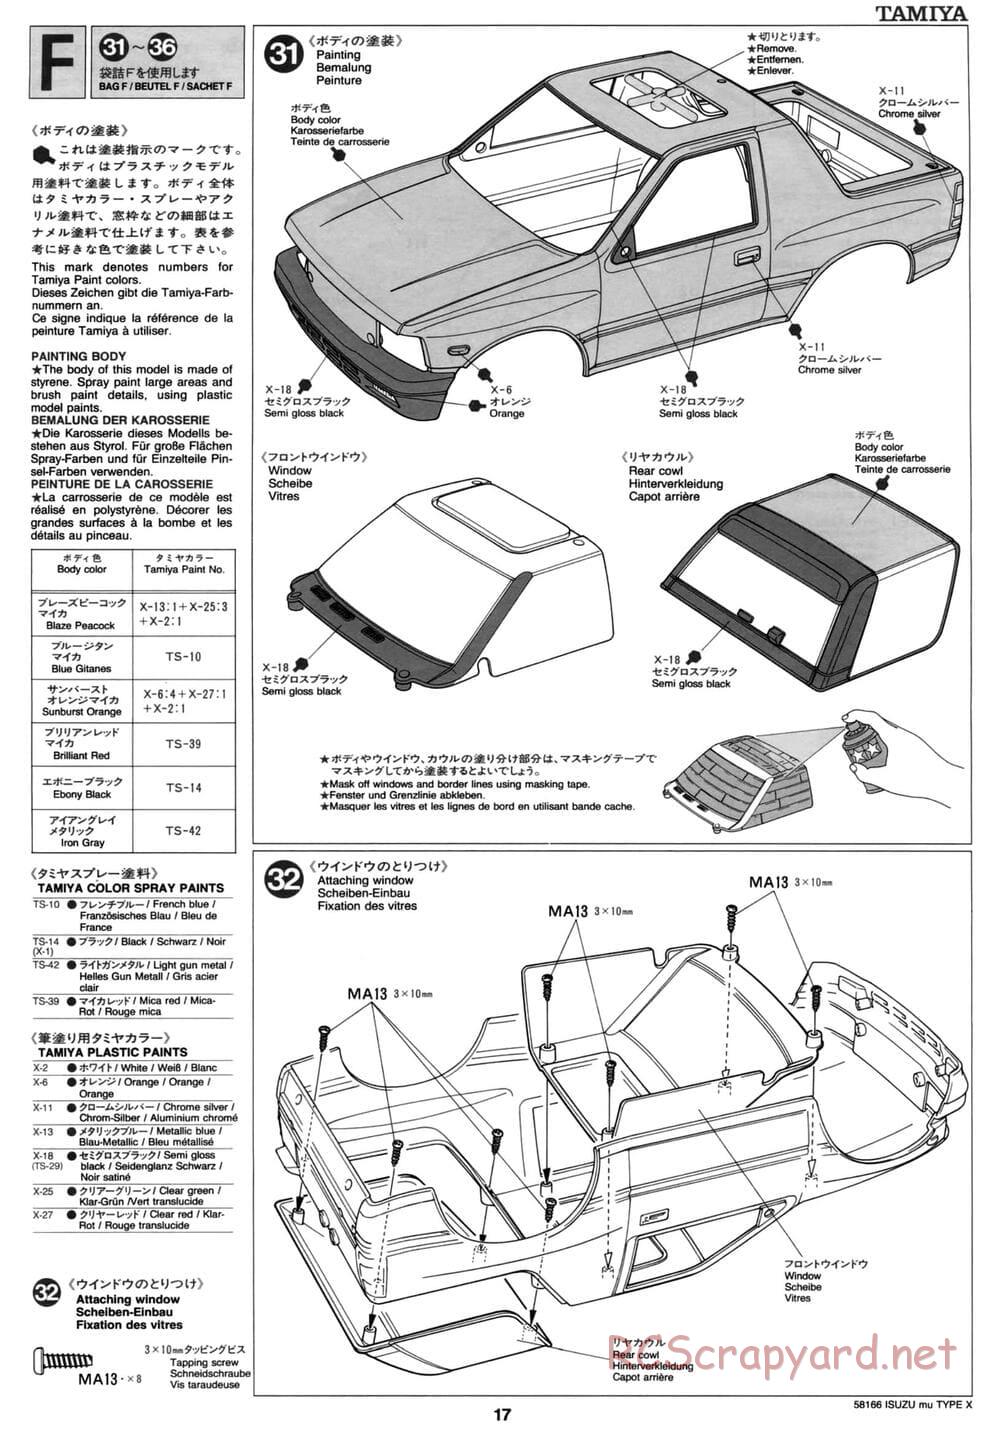 Tamiya - Isuzu Mu Type X - CC-01 Chassis - Manual - Page 17